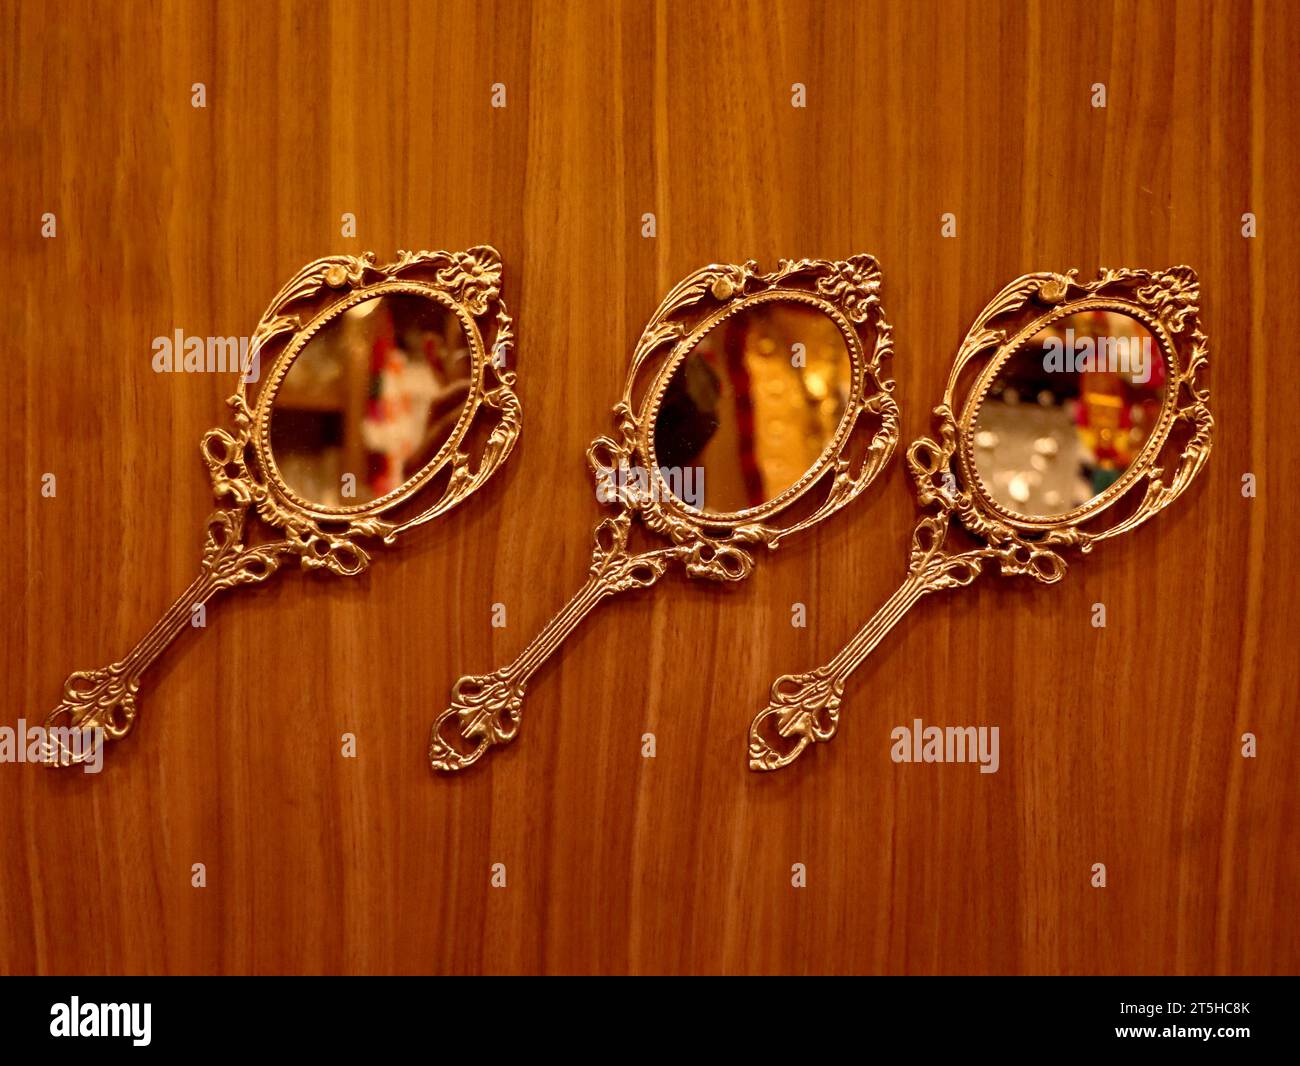 trois miroirs à main ronds dorés vintage fabriqués en bronze conservés pour être exposés sur un mur en bois à l'intérieur d'une boutique traditionnelle d'artisanat et de souvenirs Banque D'Images